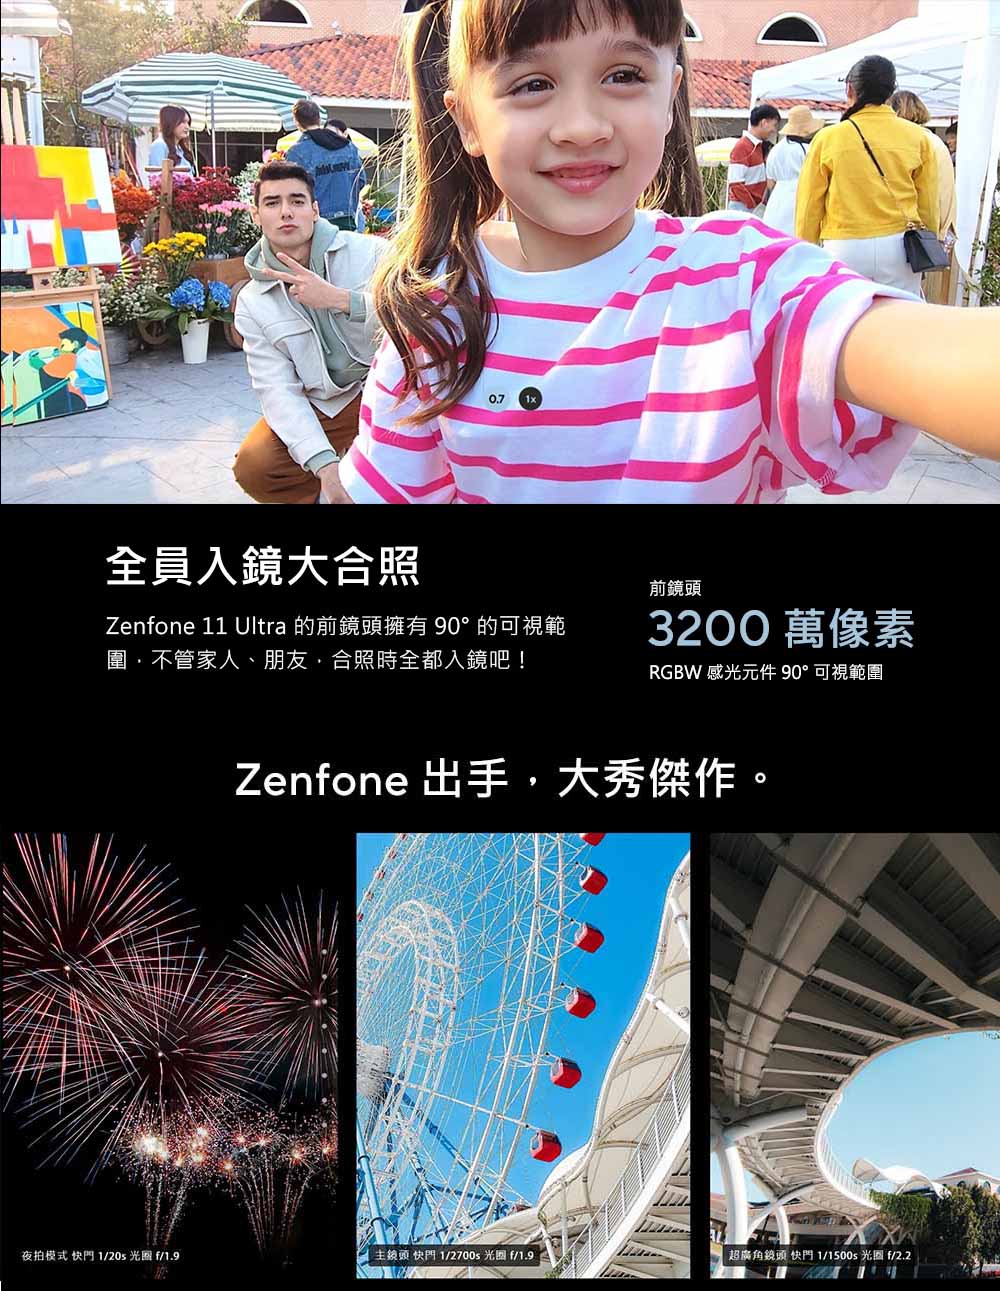 Zenfone 11 Ultra 的前鏡頭擁有90的可視範